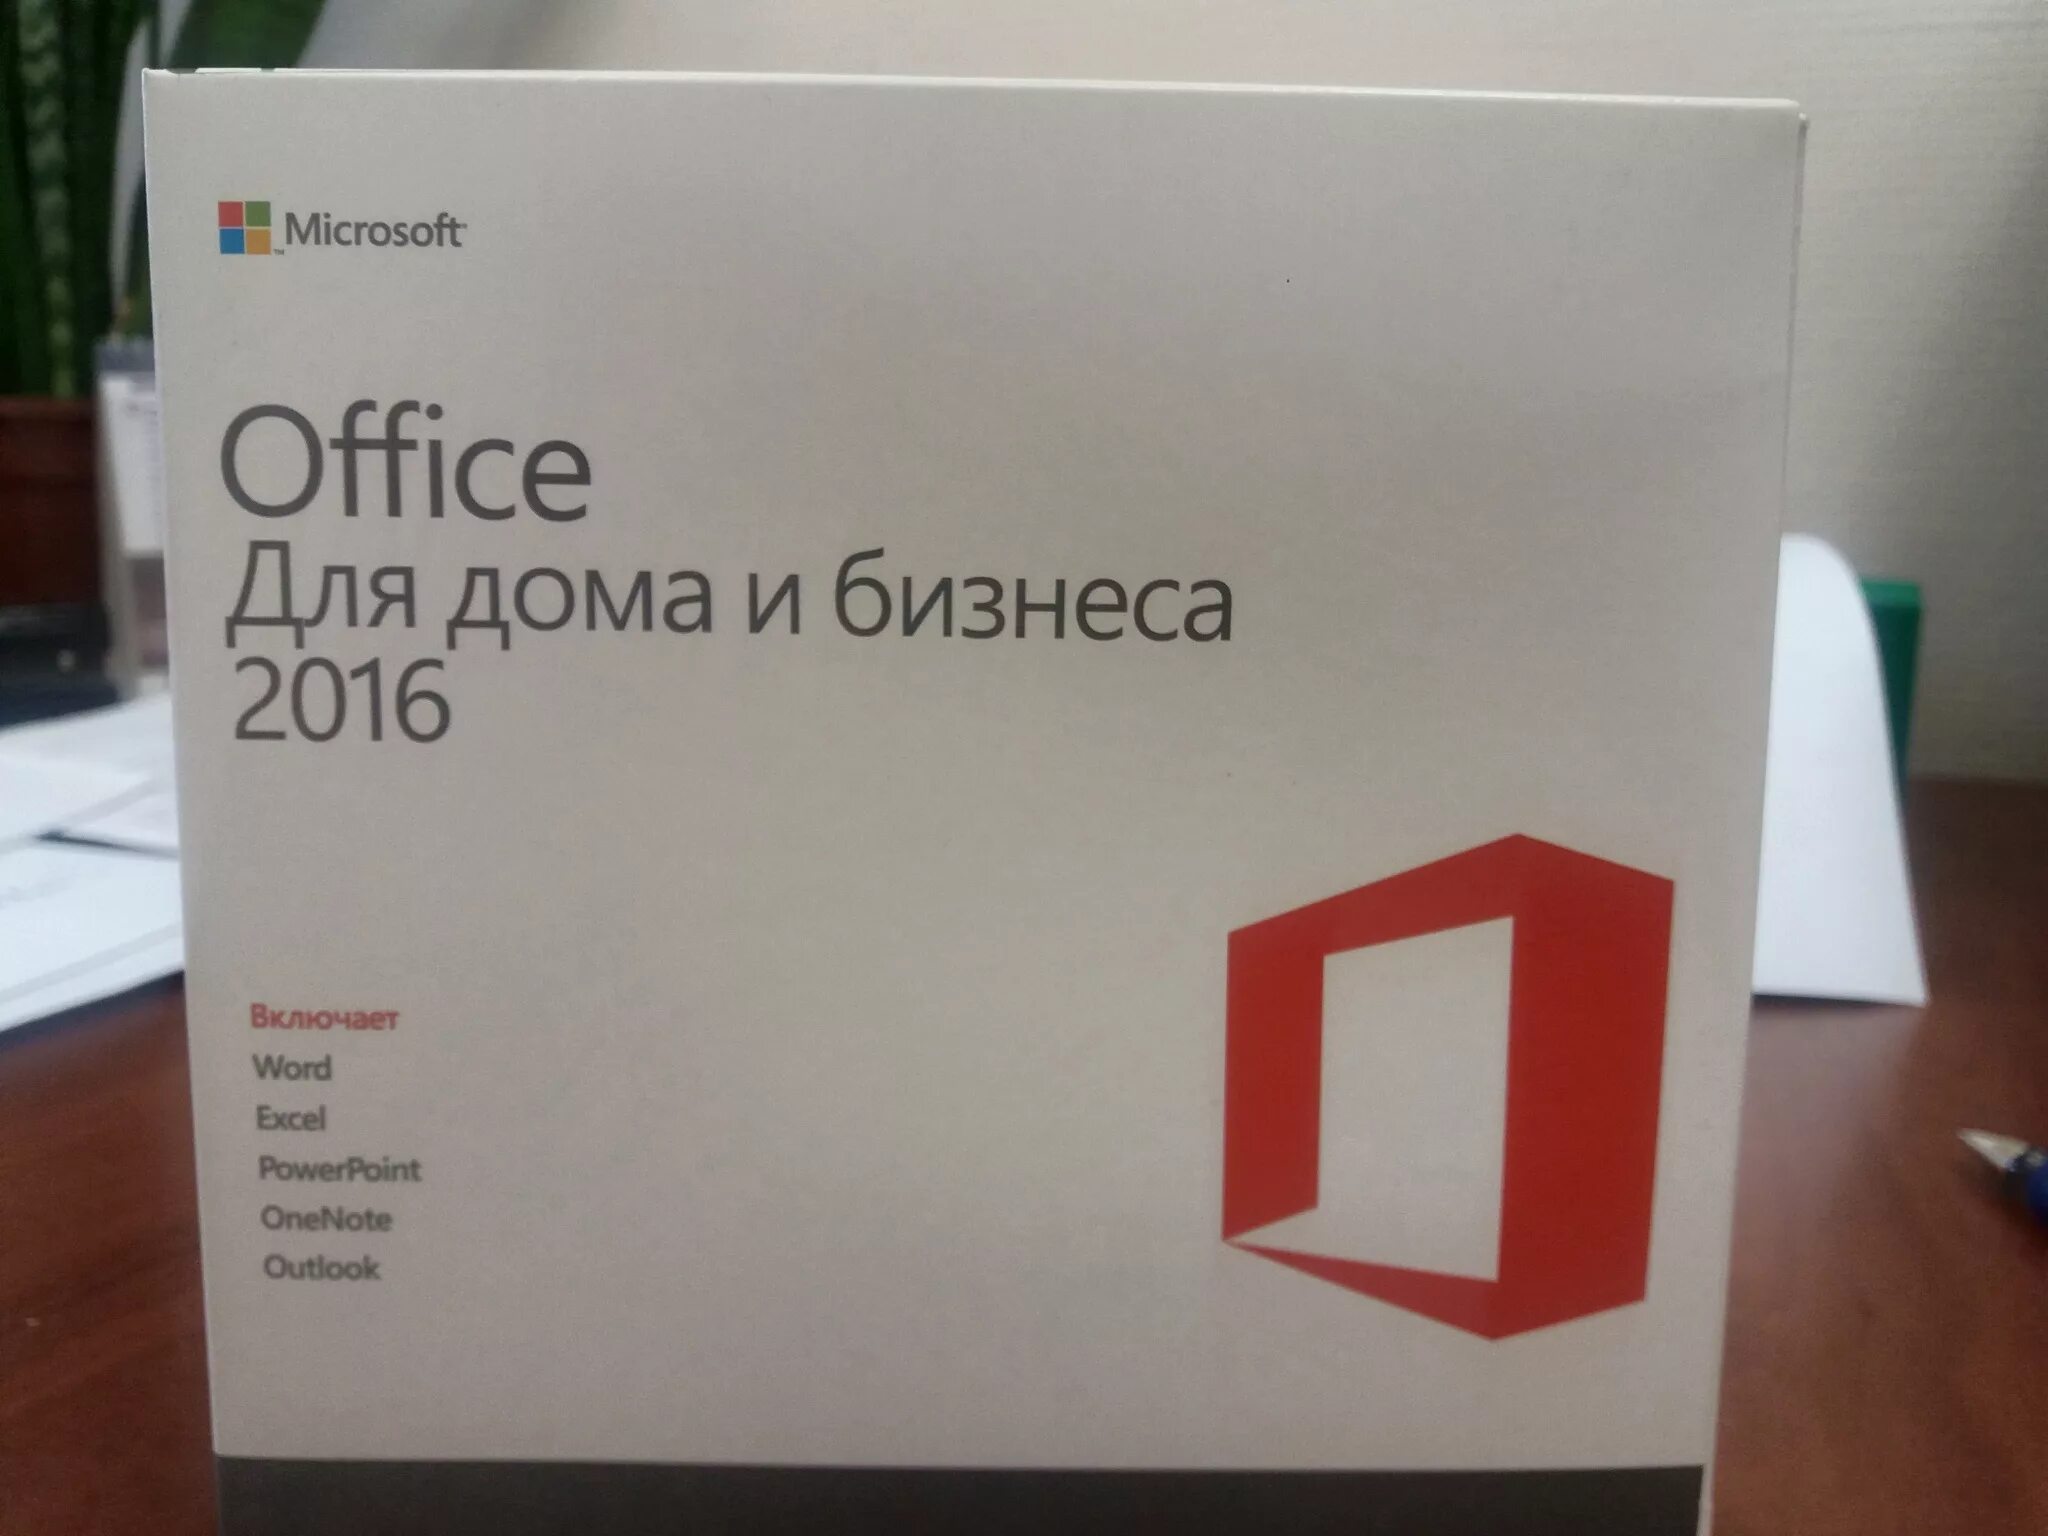 Купить офис бессрочная лицензия. Microsoft Office для дома. Microsoft Office 2016 Home and Business. Офис для дома и бизнеса. Лицензия Microsoft Office.